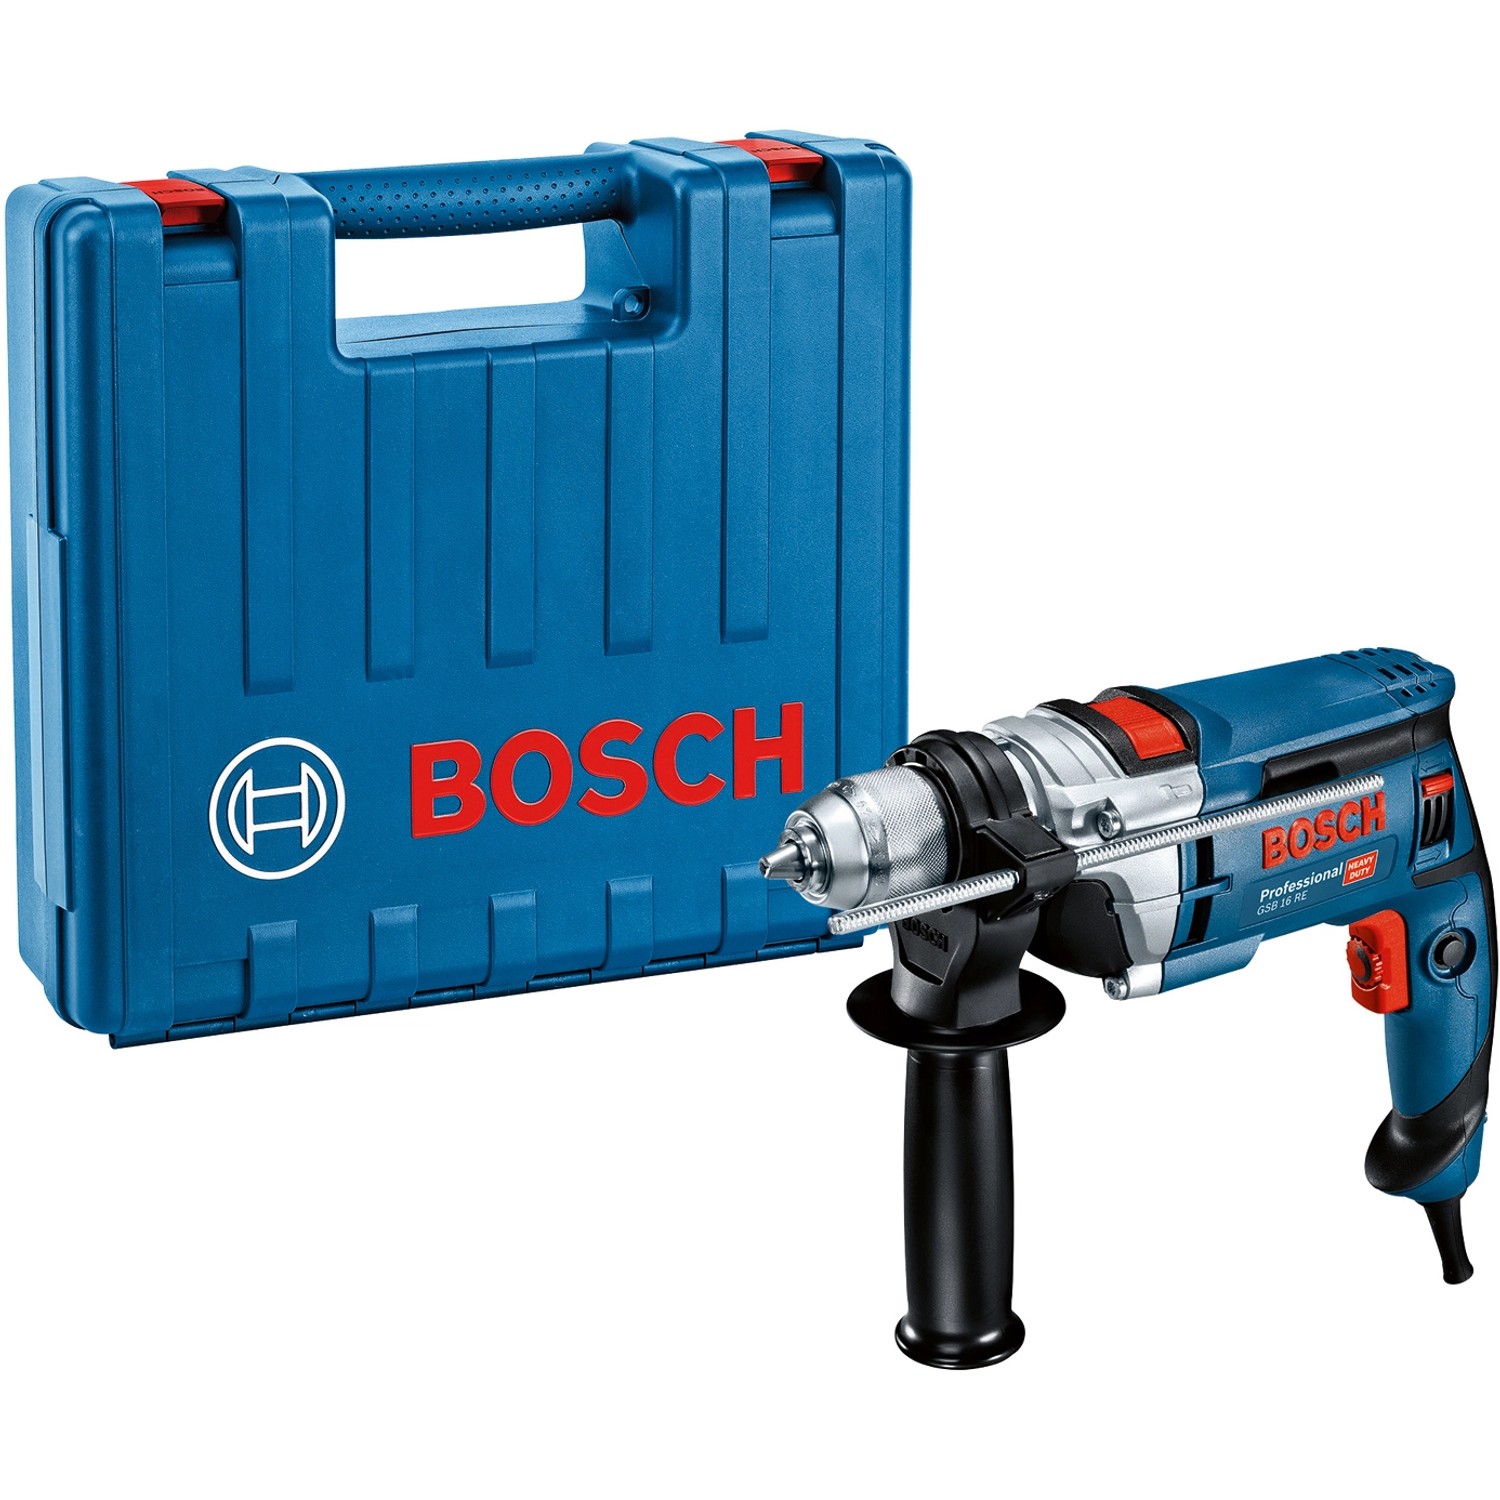 Bosch Professional Schlagbohrmaschine GSB 16 RE in Koffer